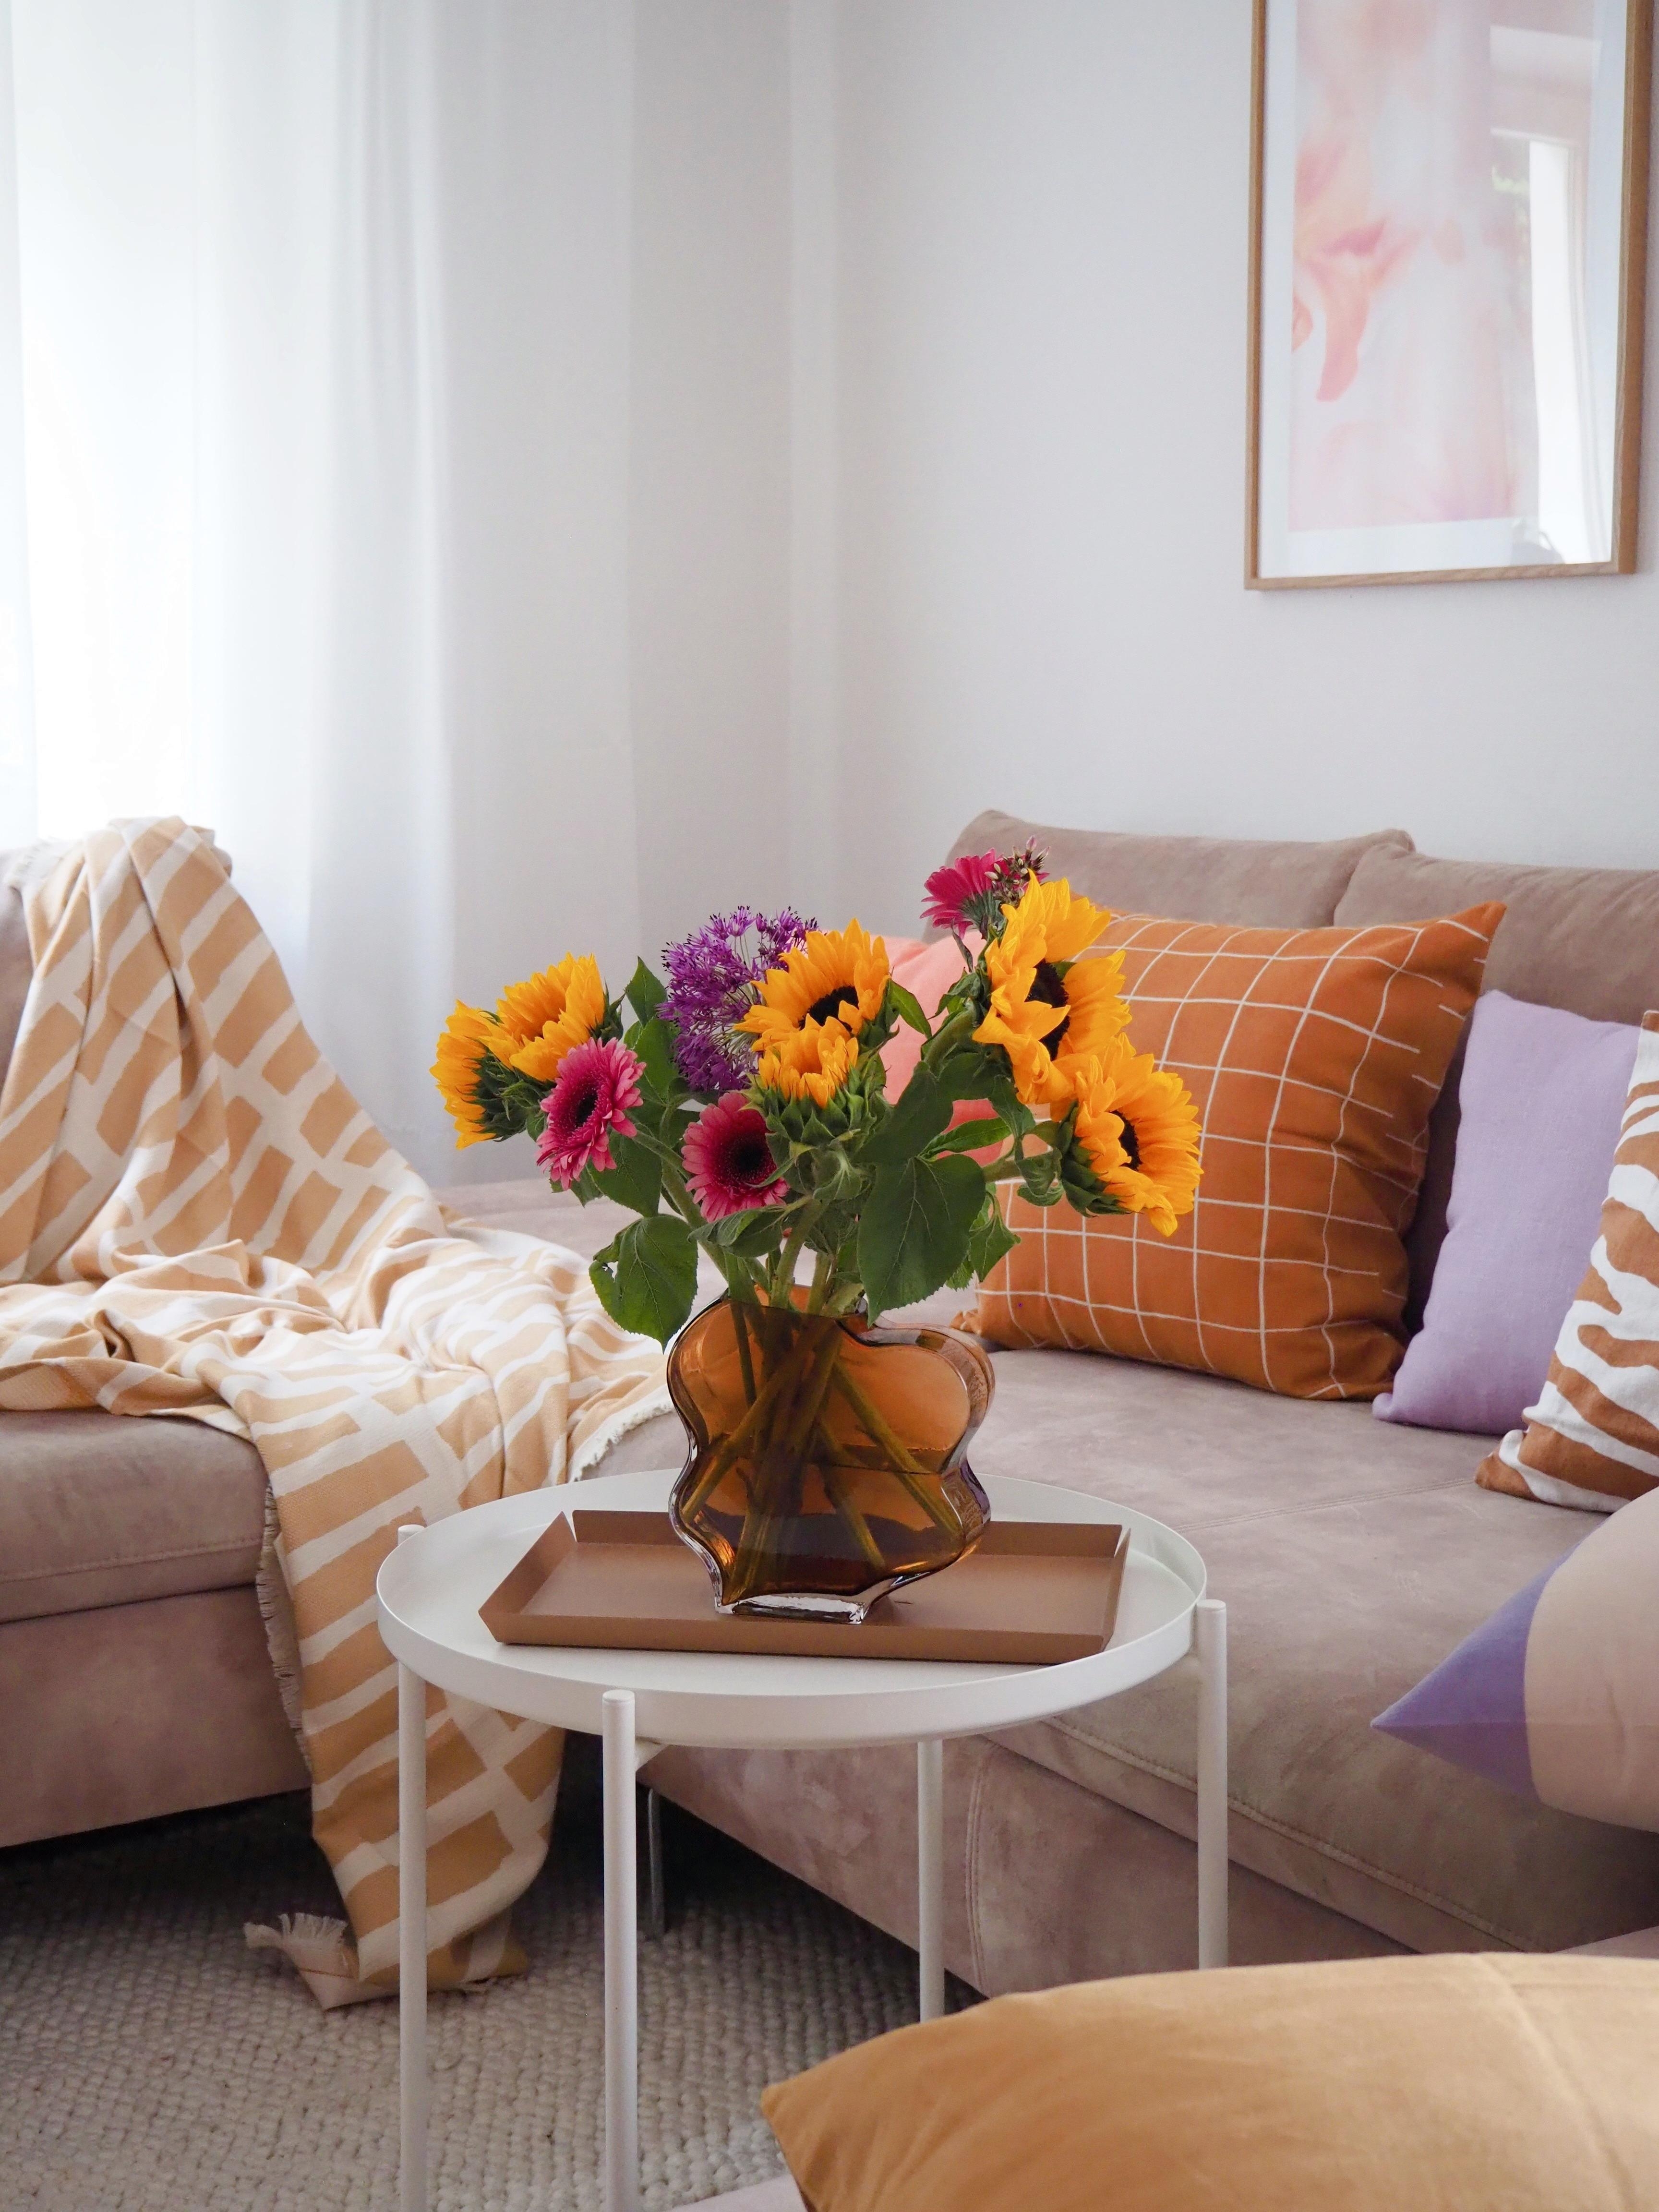 HAPPY FRIDAY aus dem #wohnzimmer #livingroom #sonnenblume #couchstyle #couch #wohnzimmerinspo